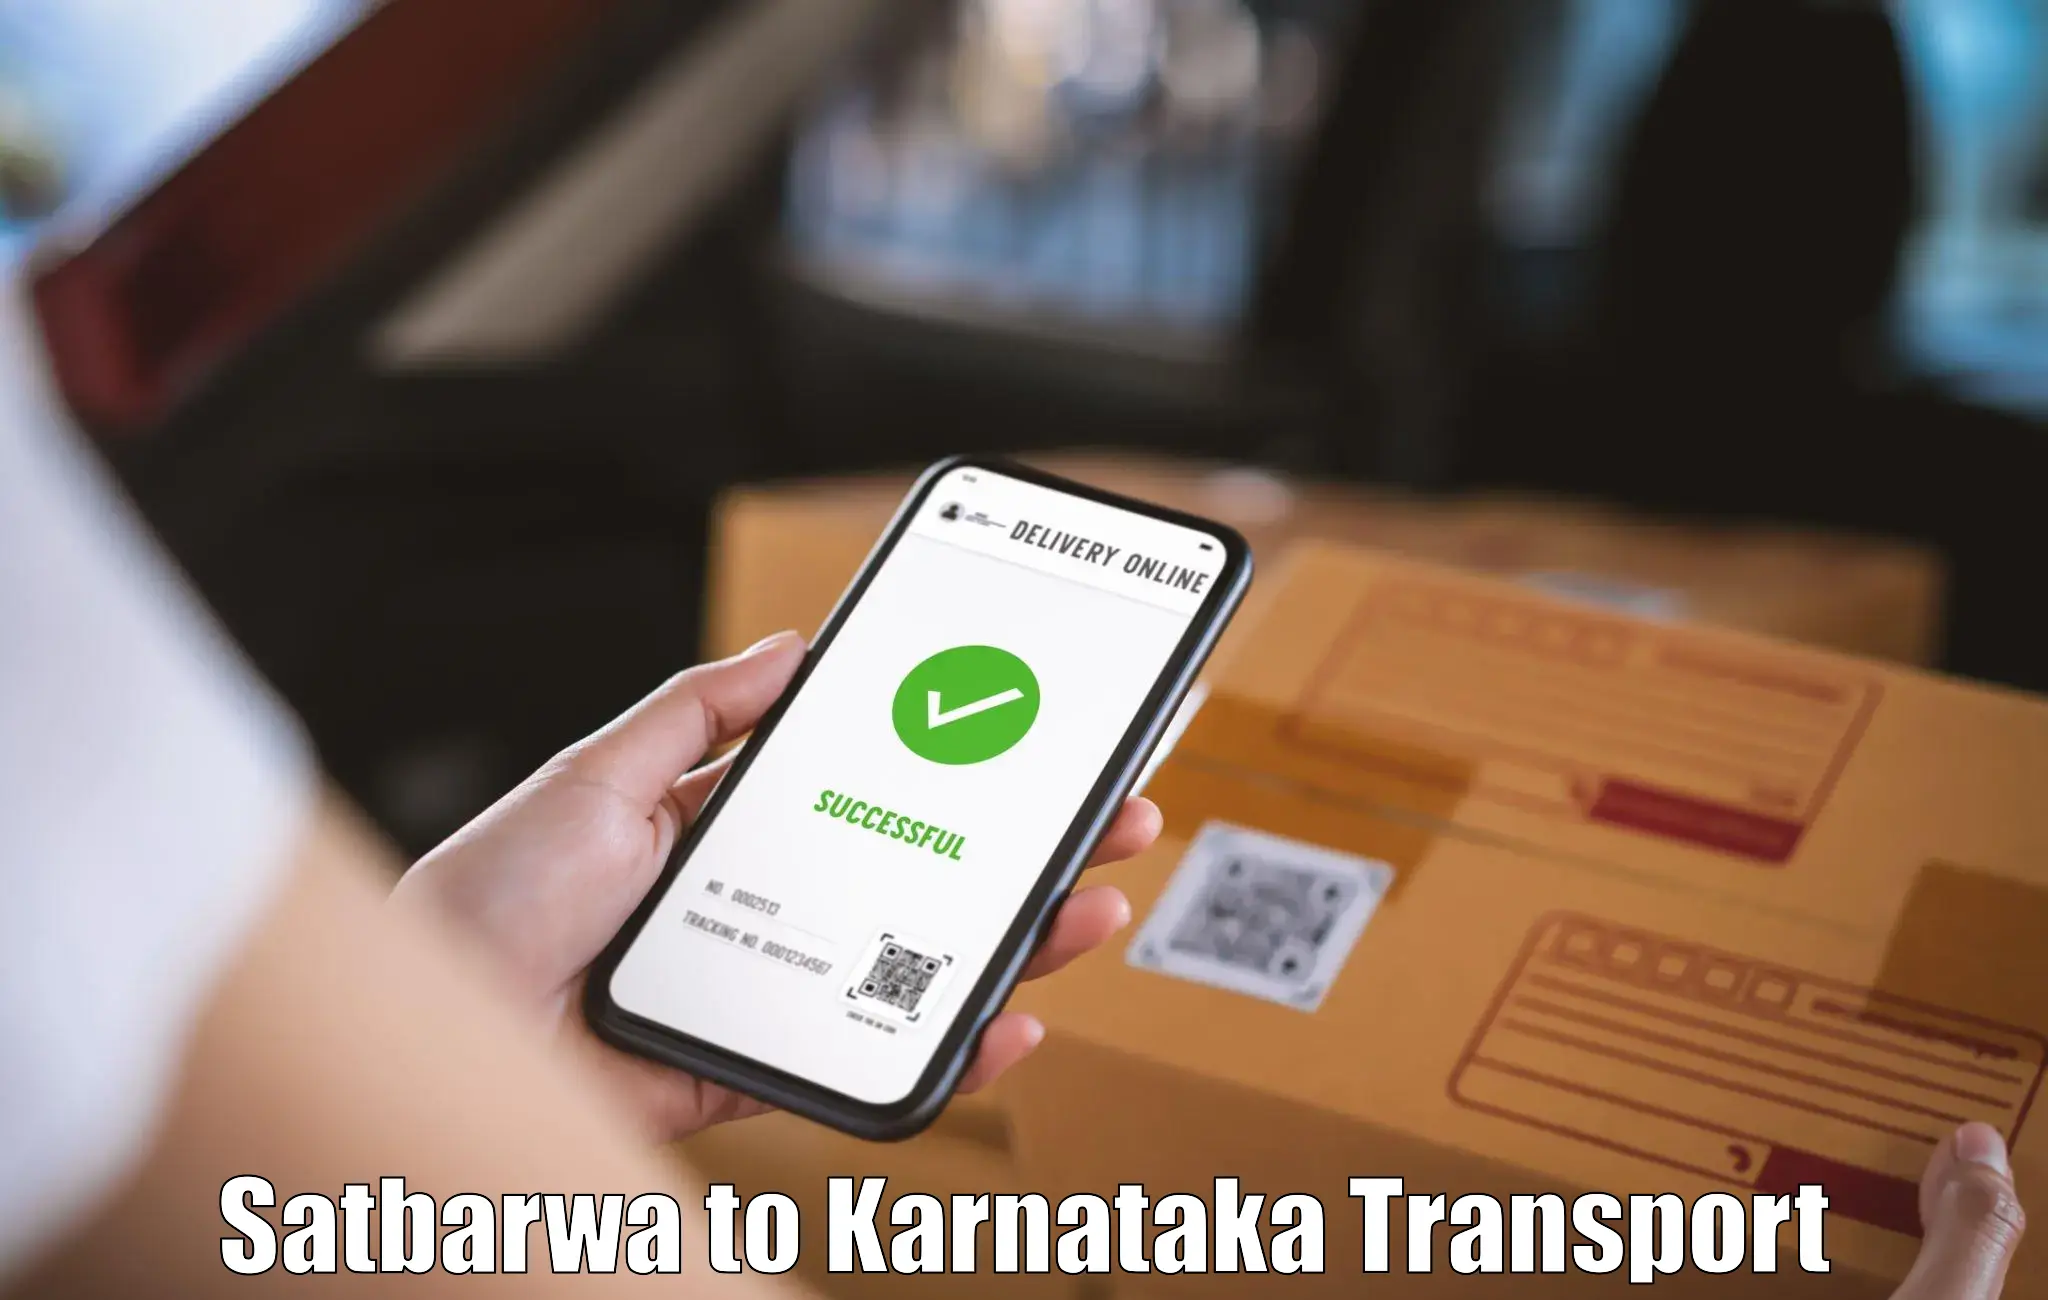 Material transport services Satbarwa to Sagara